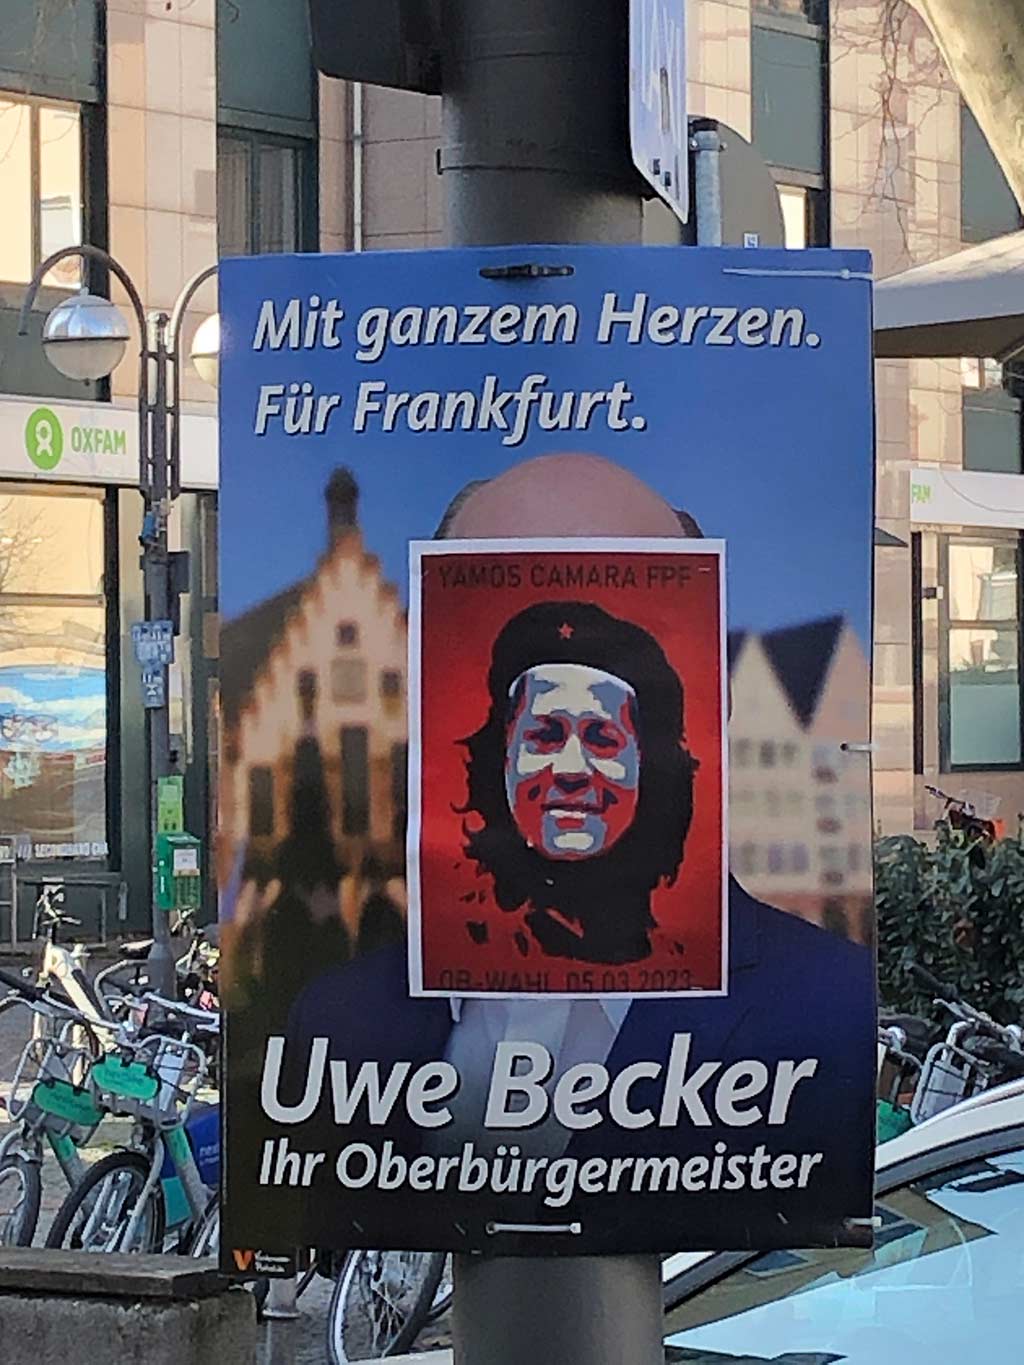 Anhänger des Frankfurter OB-Kandidaten Yamos Camara überkleben weiterhin Plakate anderer